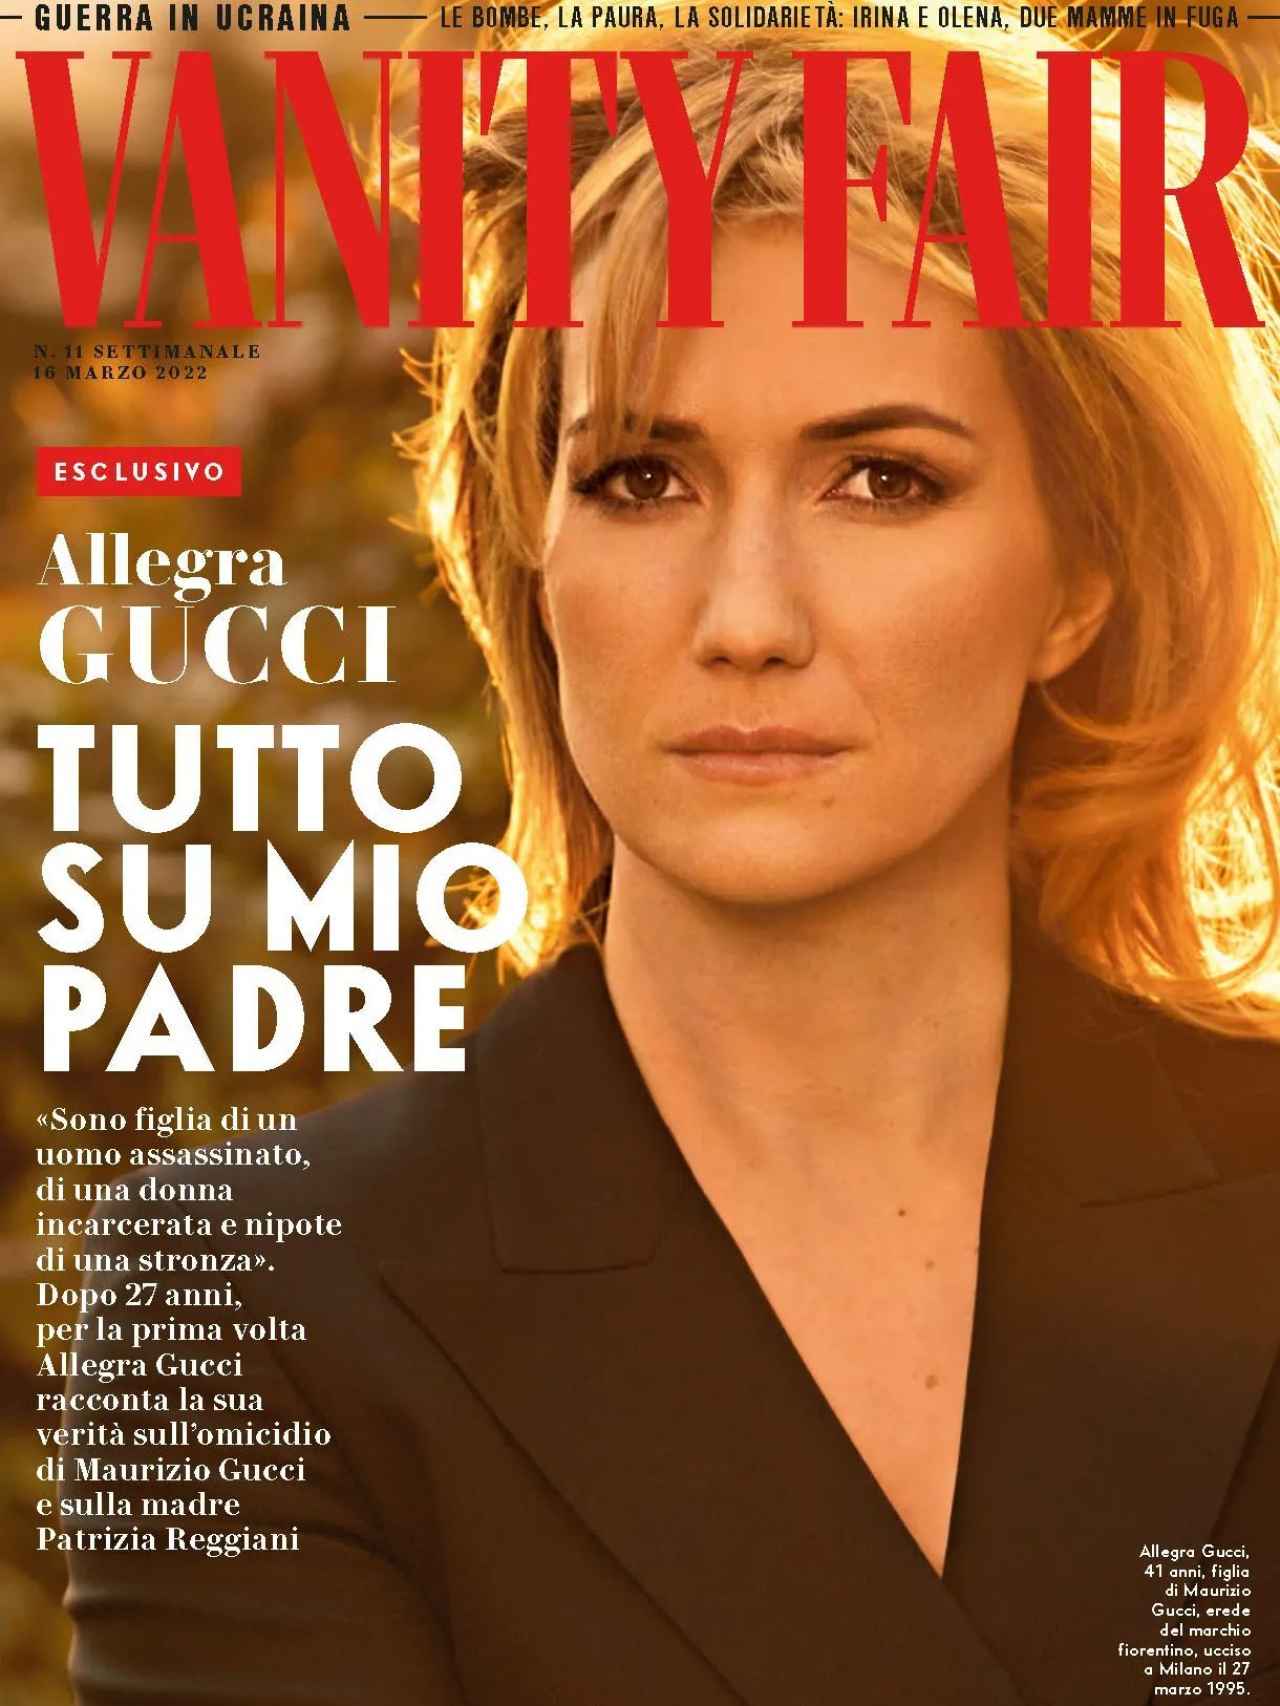 Portada de 'Vanity Fair' con la entrevista de Allegra Gucci.